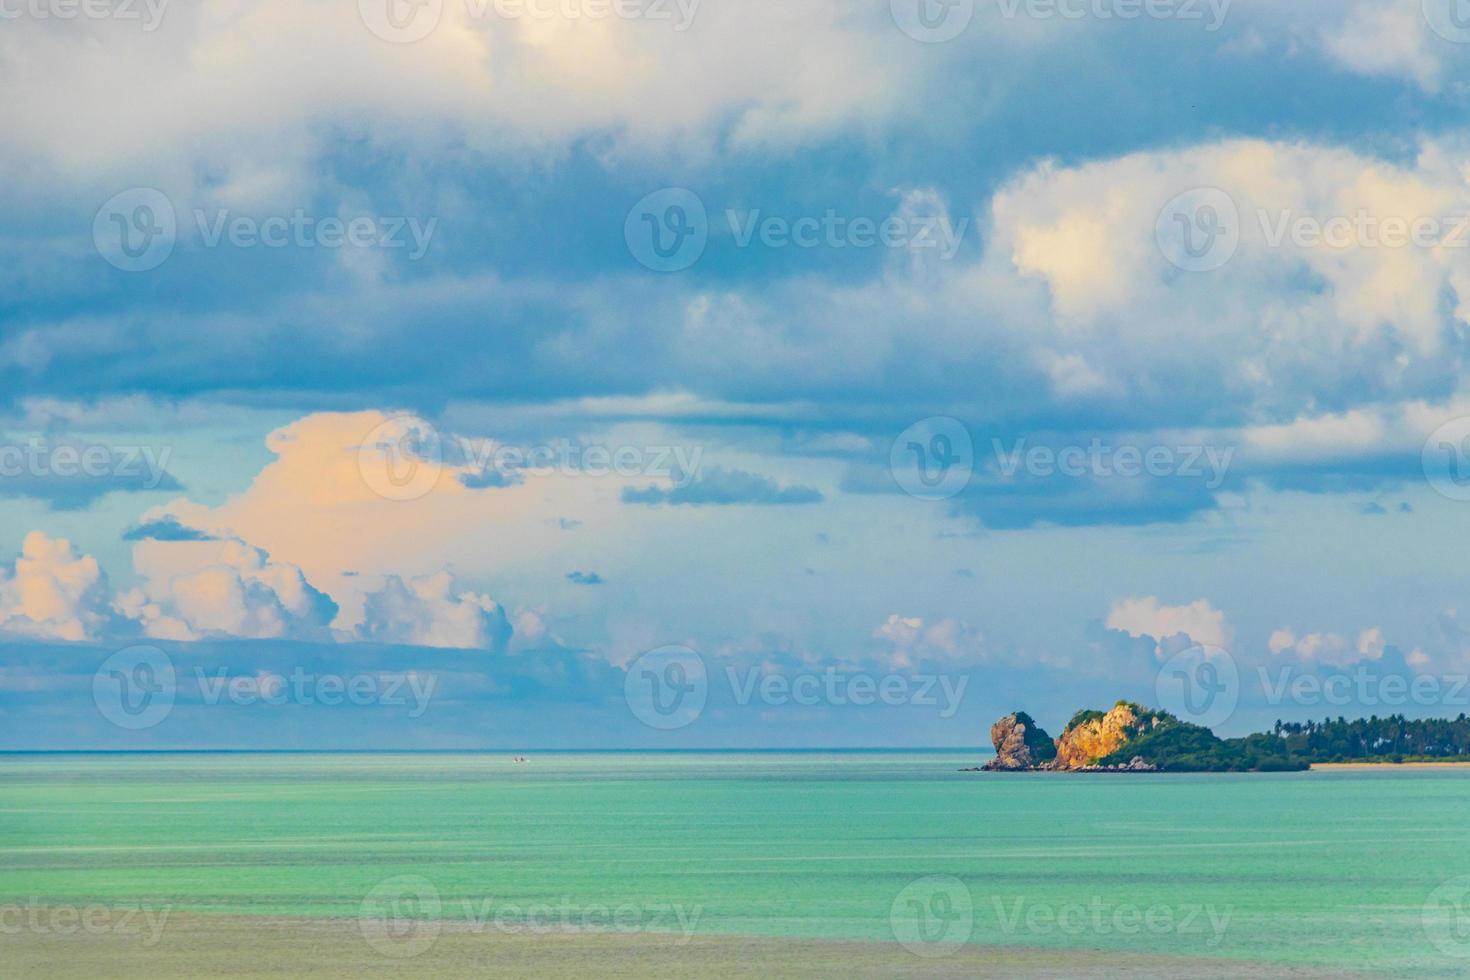 fantastisk Koh Samui Island Beach och landskap panorama i Thailand. foto